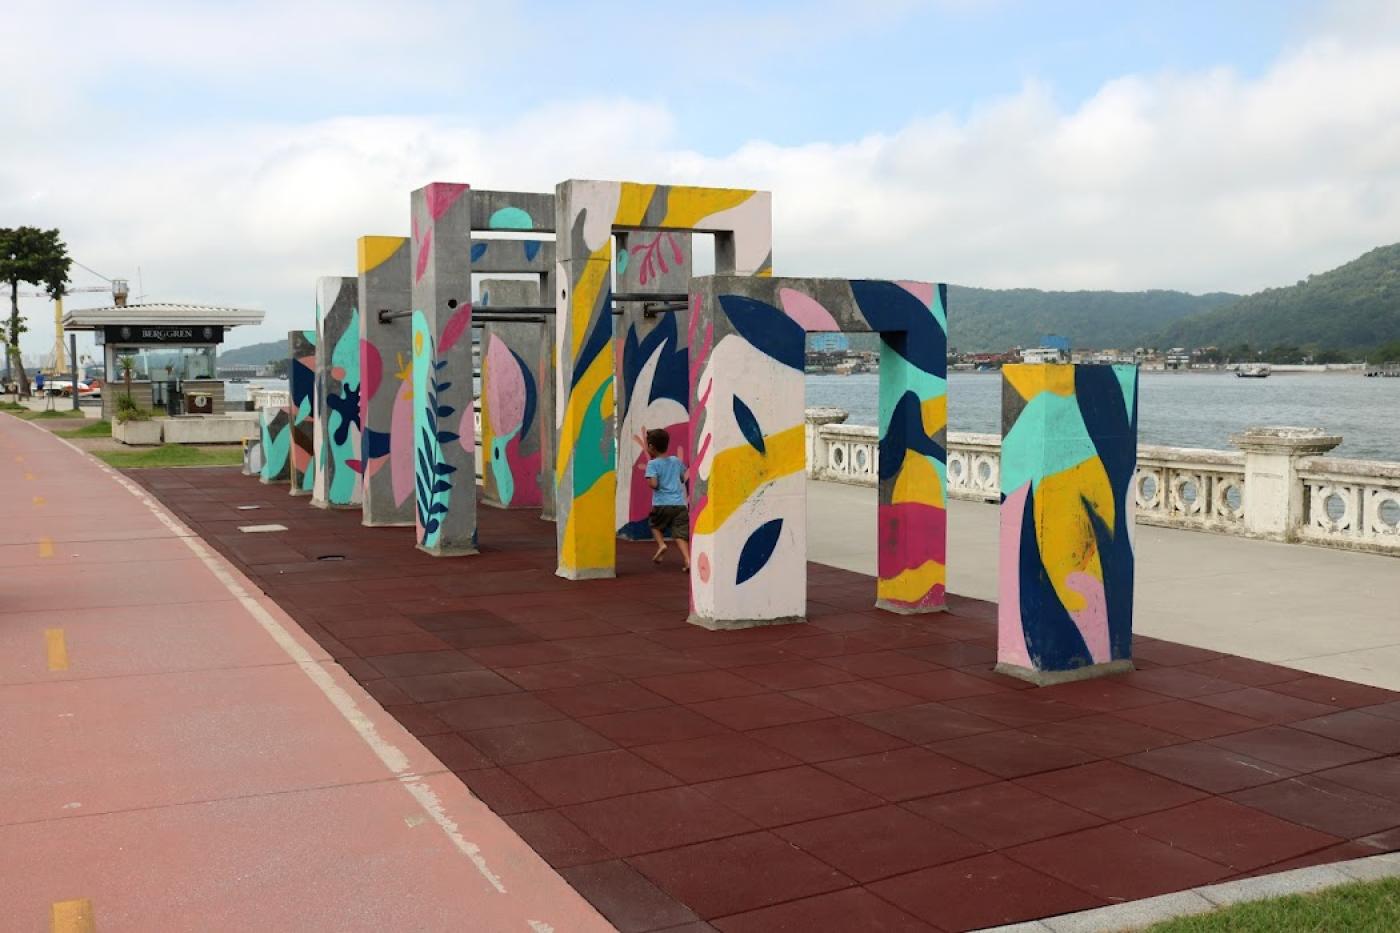 Ponta da Praia Parkour Park, à Santos, gagne en sécurité avec des sols en caoutchouc